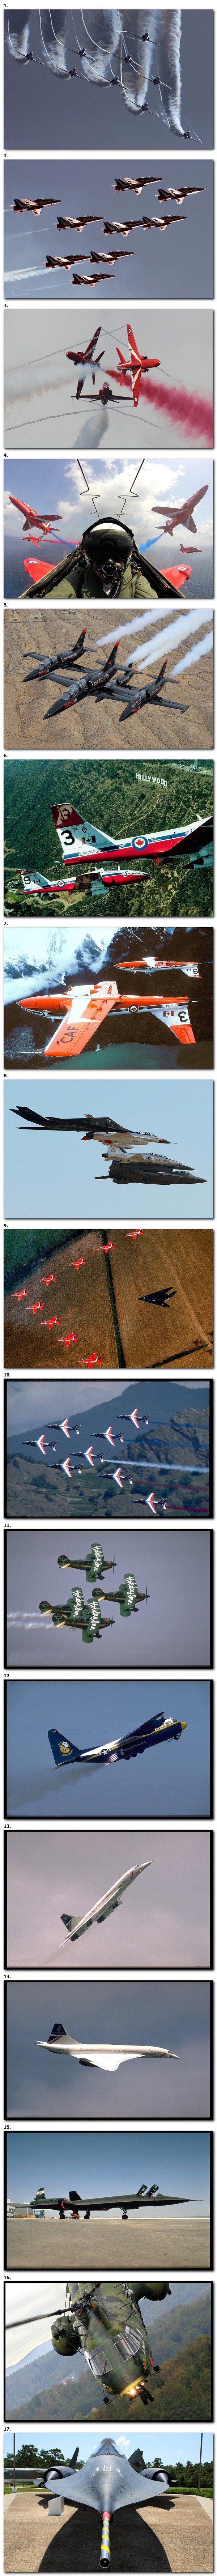 Various airshow photos